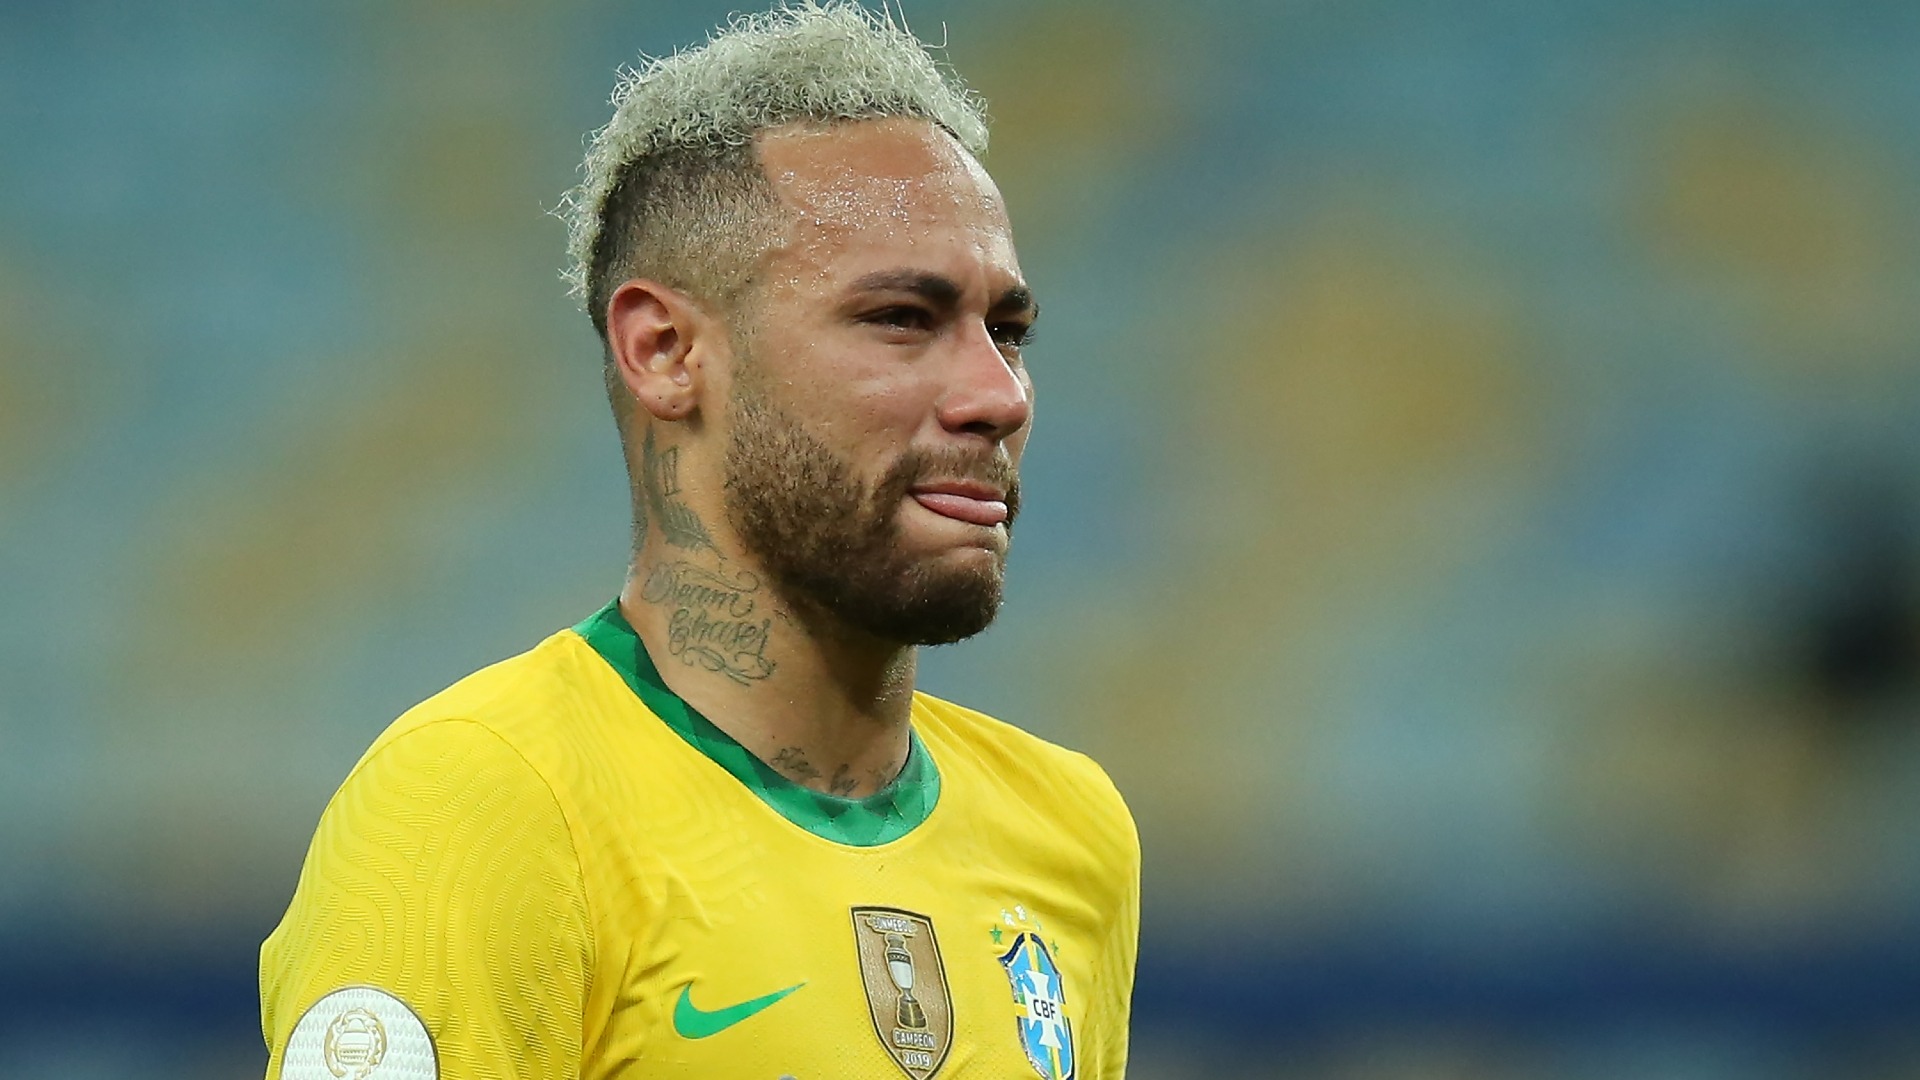 Ảnh Neymar - Cầu Thủ Bóng Đá Thế Giới Đẹp Trai, Chất Nhất